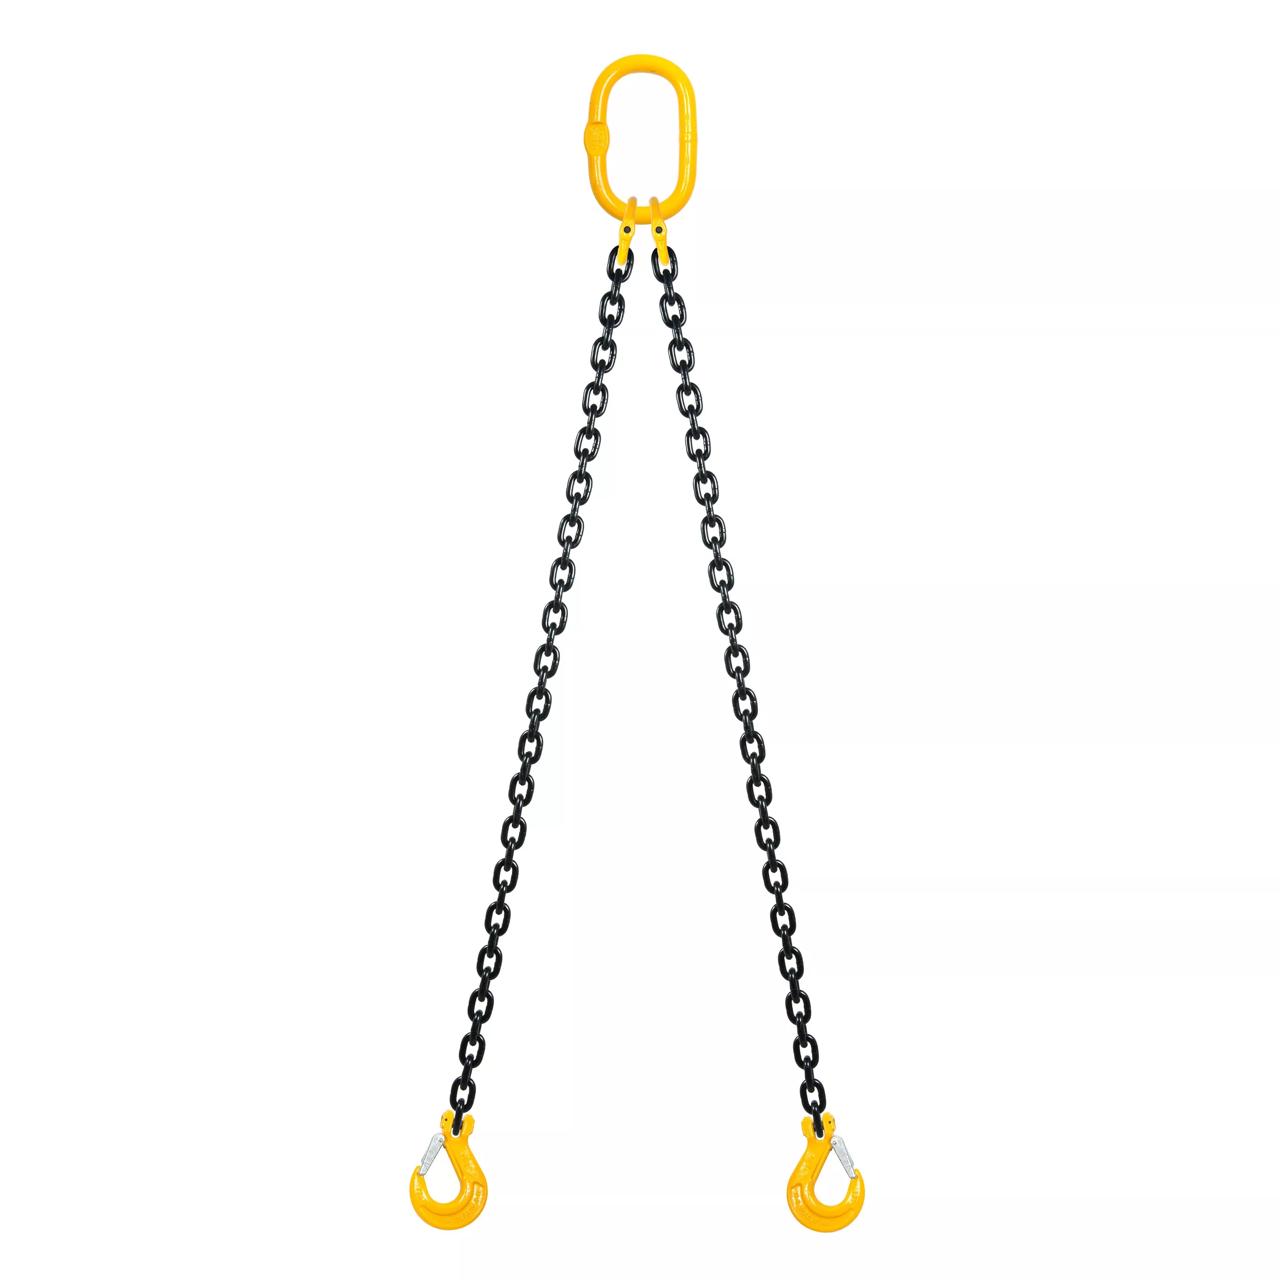 Chain sling 2-part Grade 80, 8mm, length 2m, Sling hooks